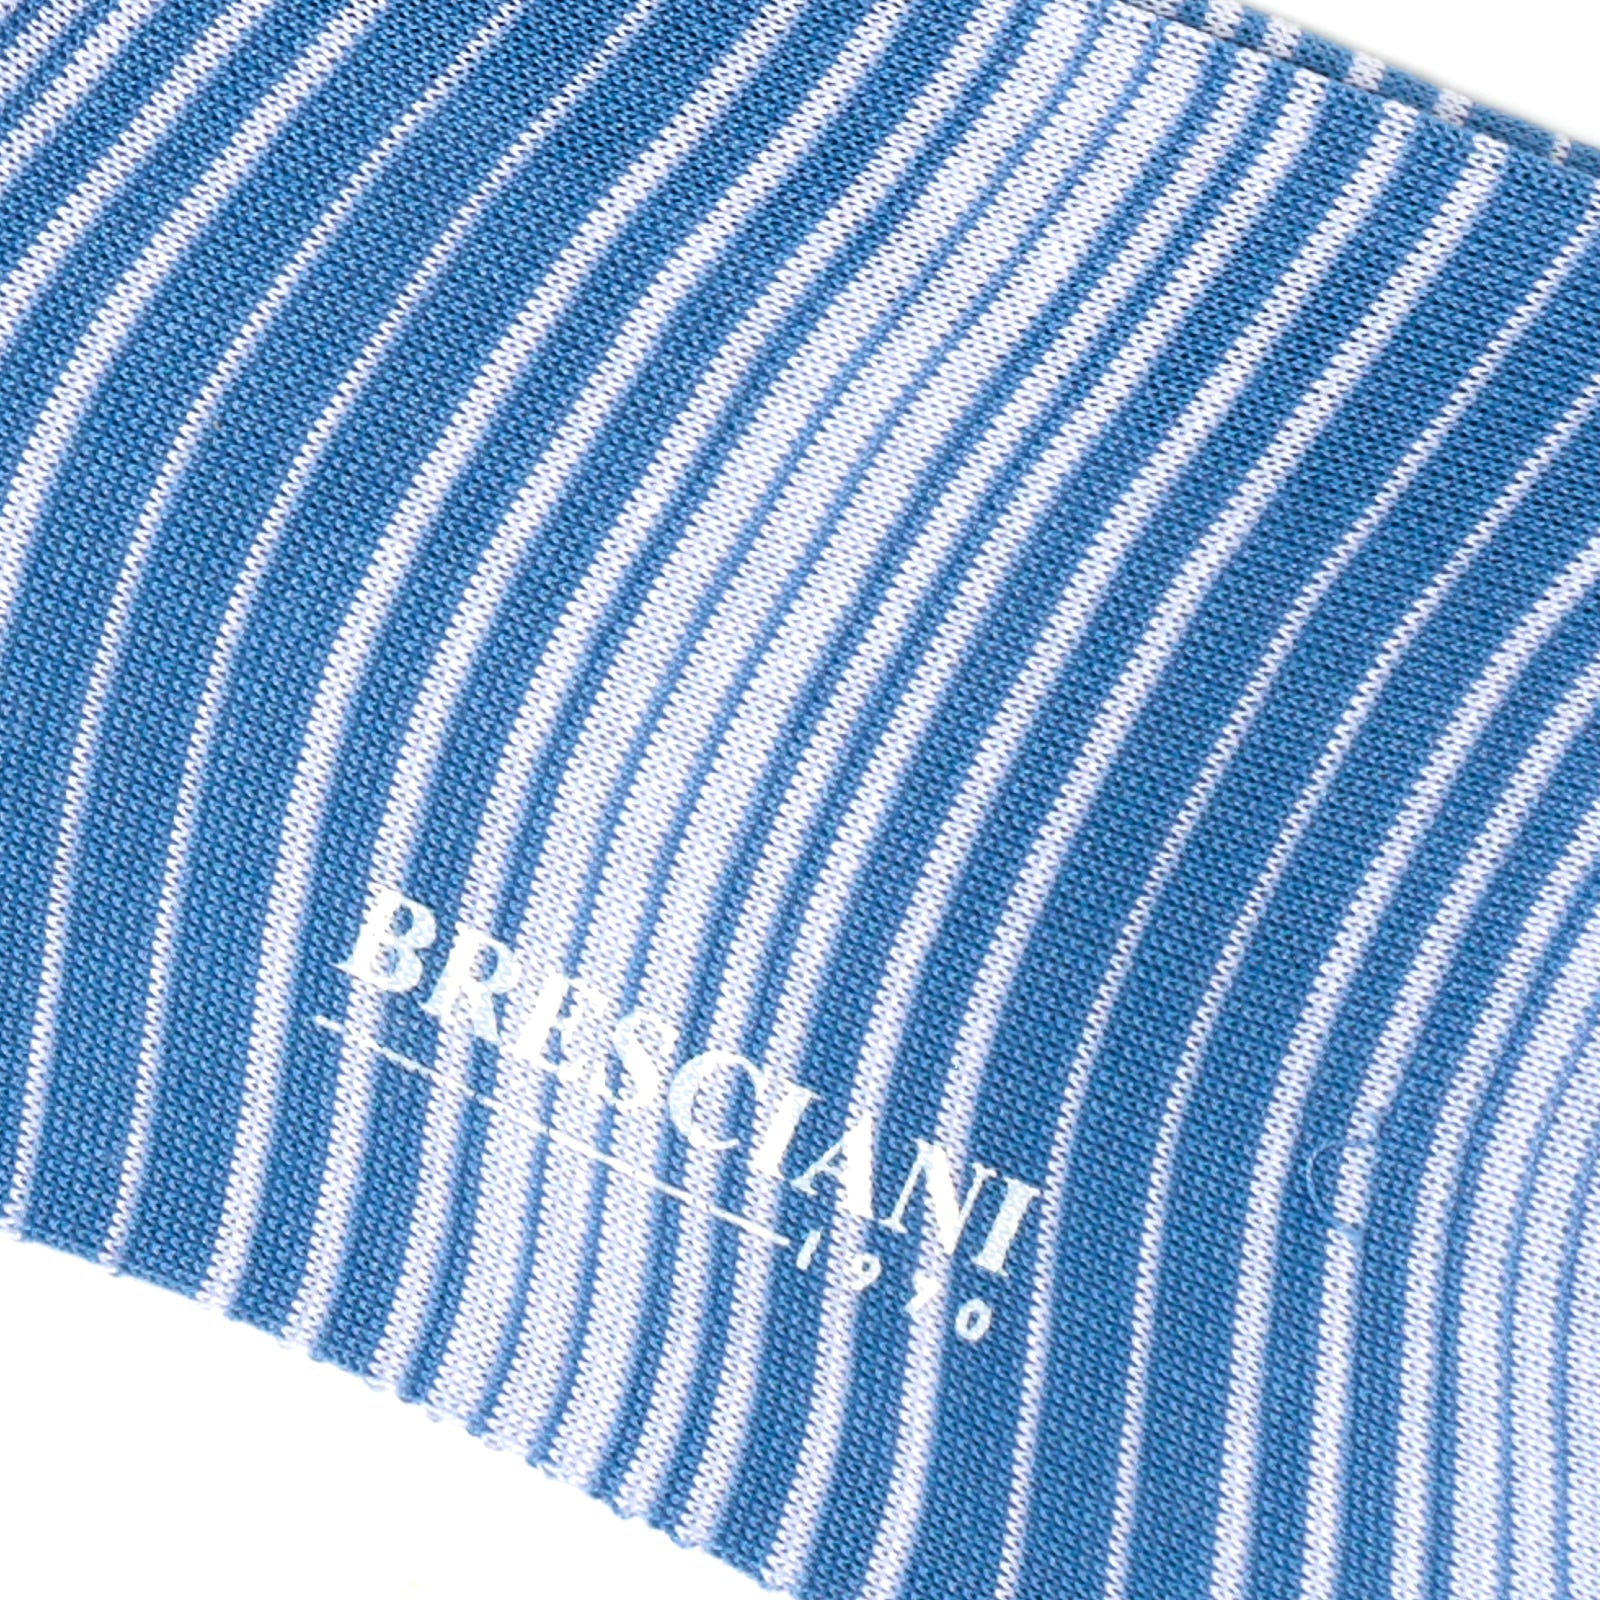 BRESCIANI Cotton Striped Design Mid Calf Length Socks US M-L